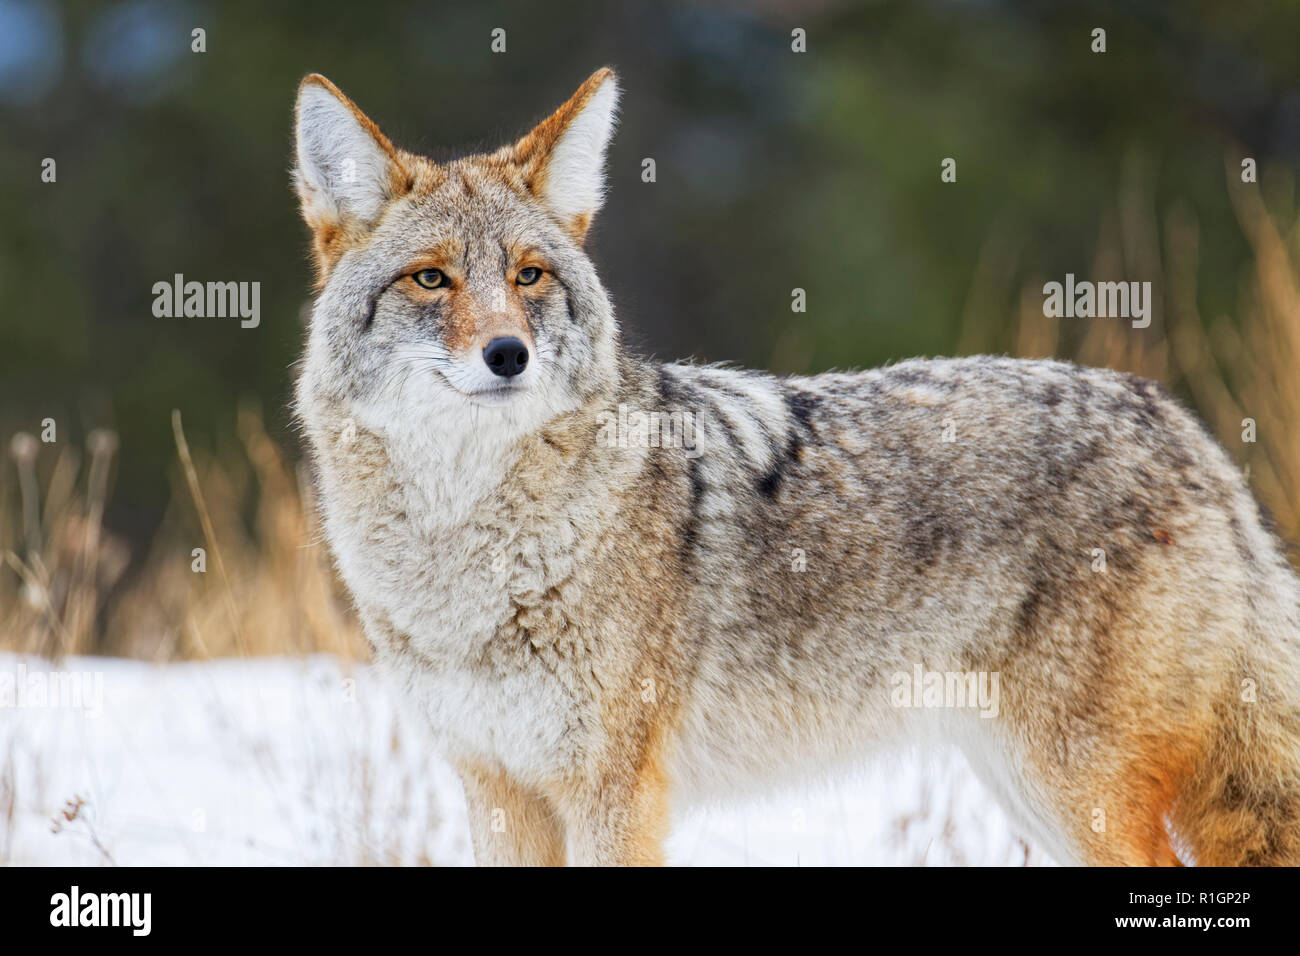 42 757,09742 extreme close up de Coyote broadside permanent dans la neige, faisant face vers la gauche et à la recherche sur le côté, vers vous, fond sombre Banque D'Images